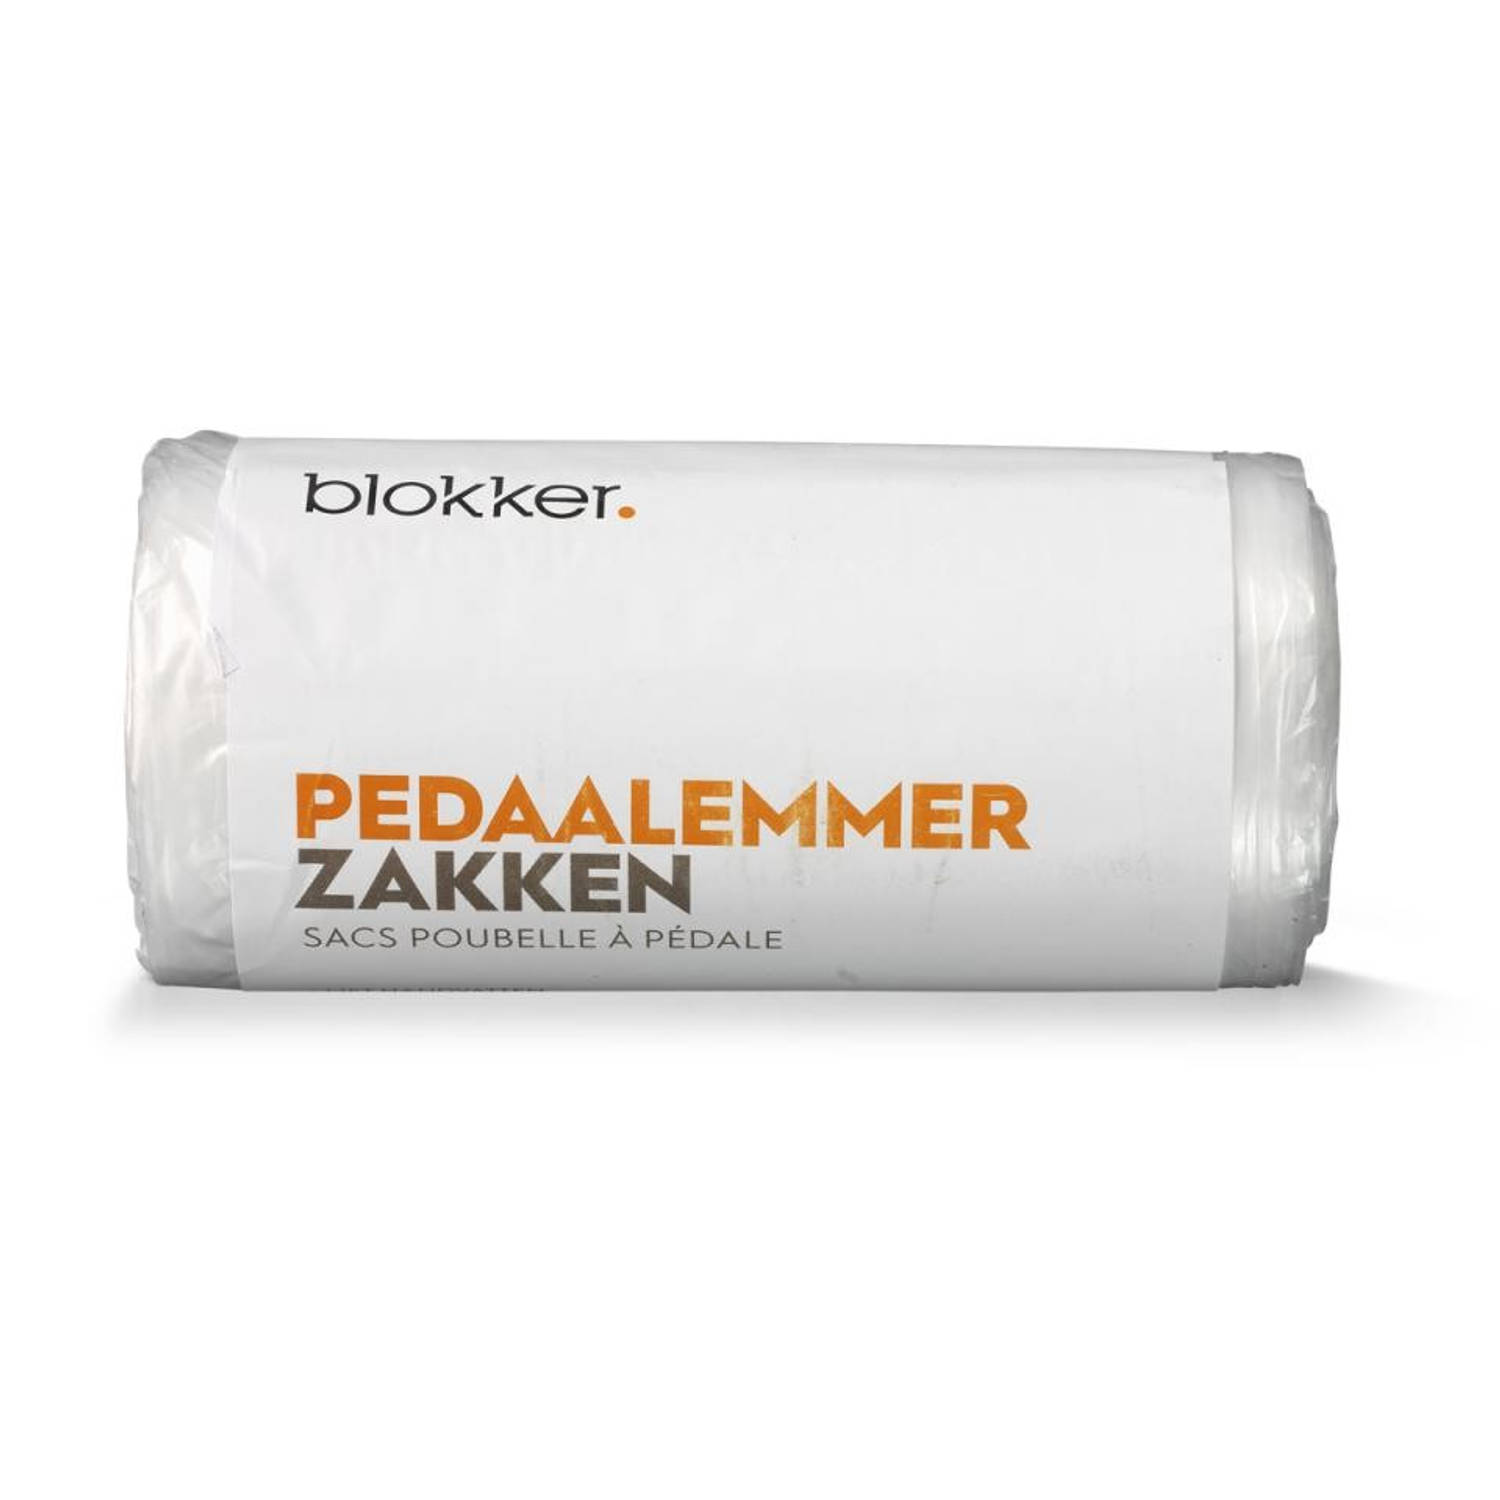 Blokker pedaalemmerzakken 20 liter - 40 stuks | Blokker